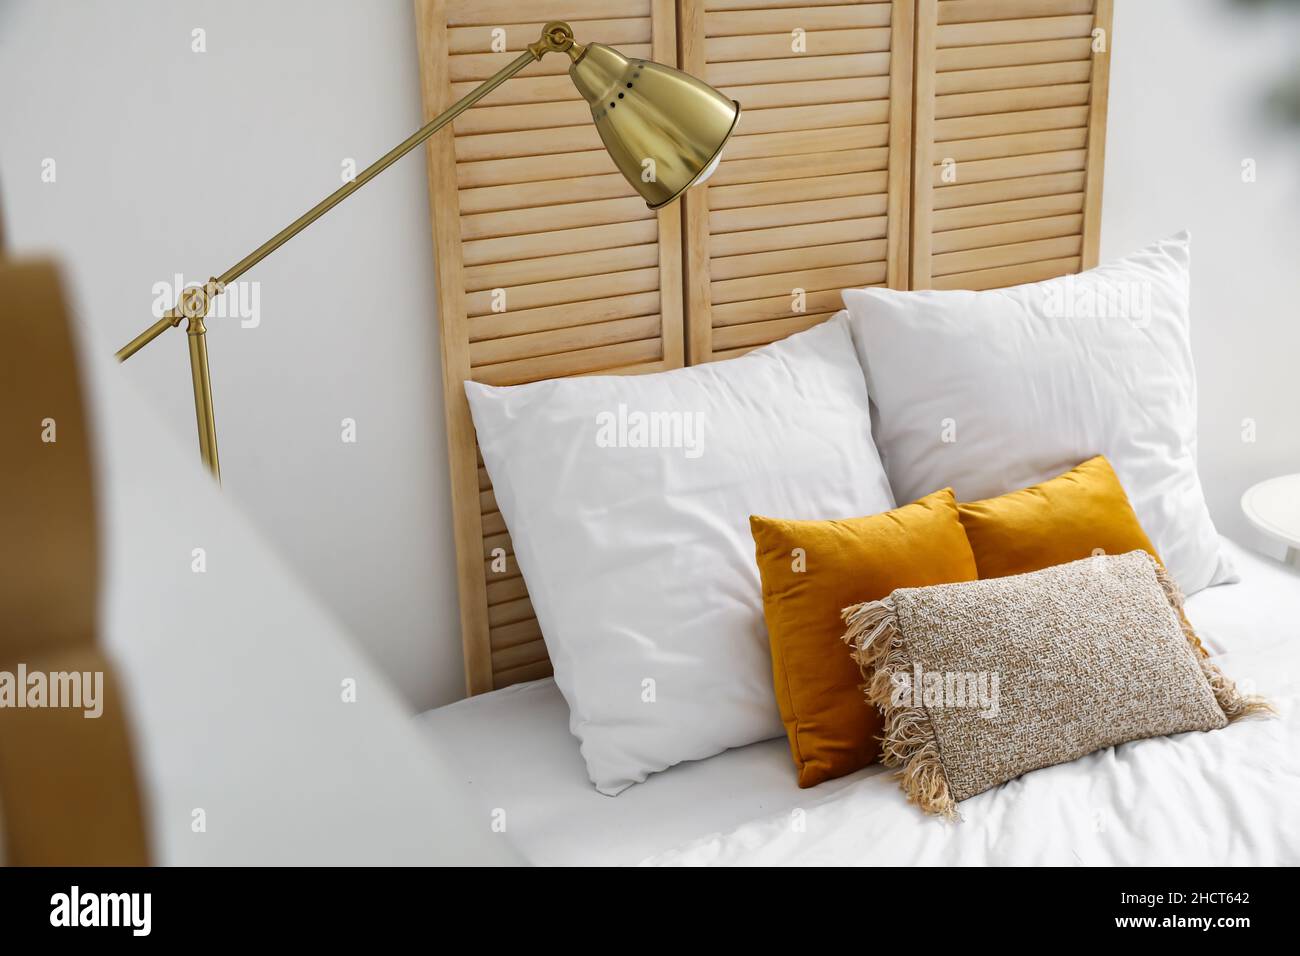 Goldene Stehlampe neben dem Bett im Zimmer Stockfotografie - Alamy